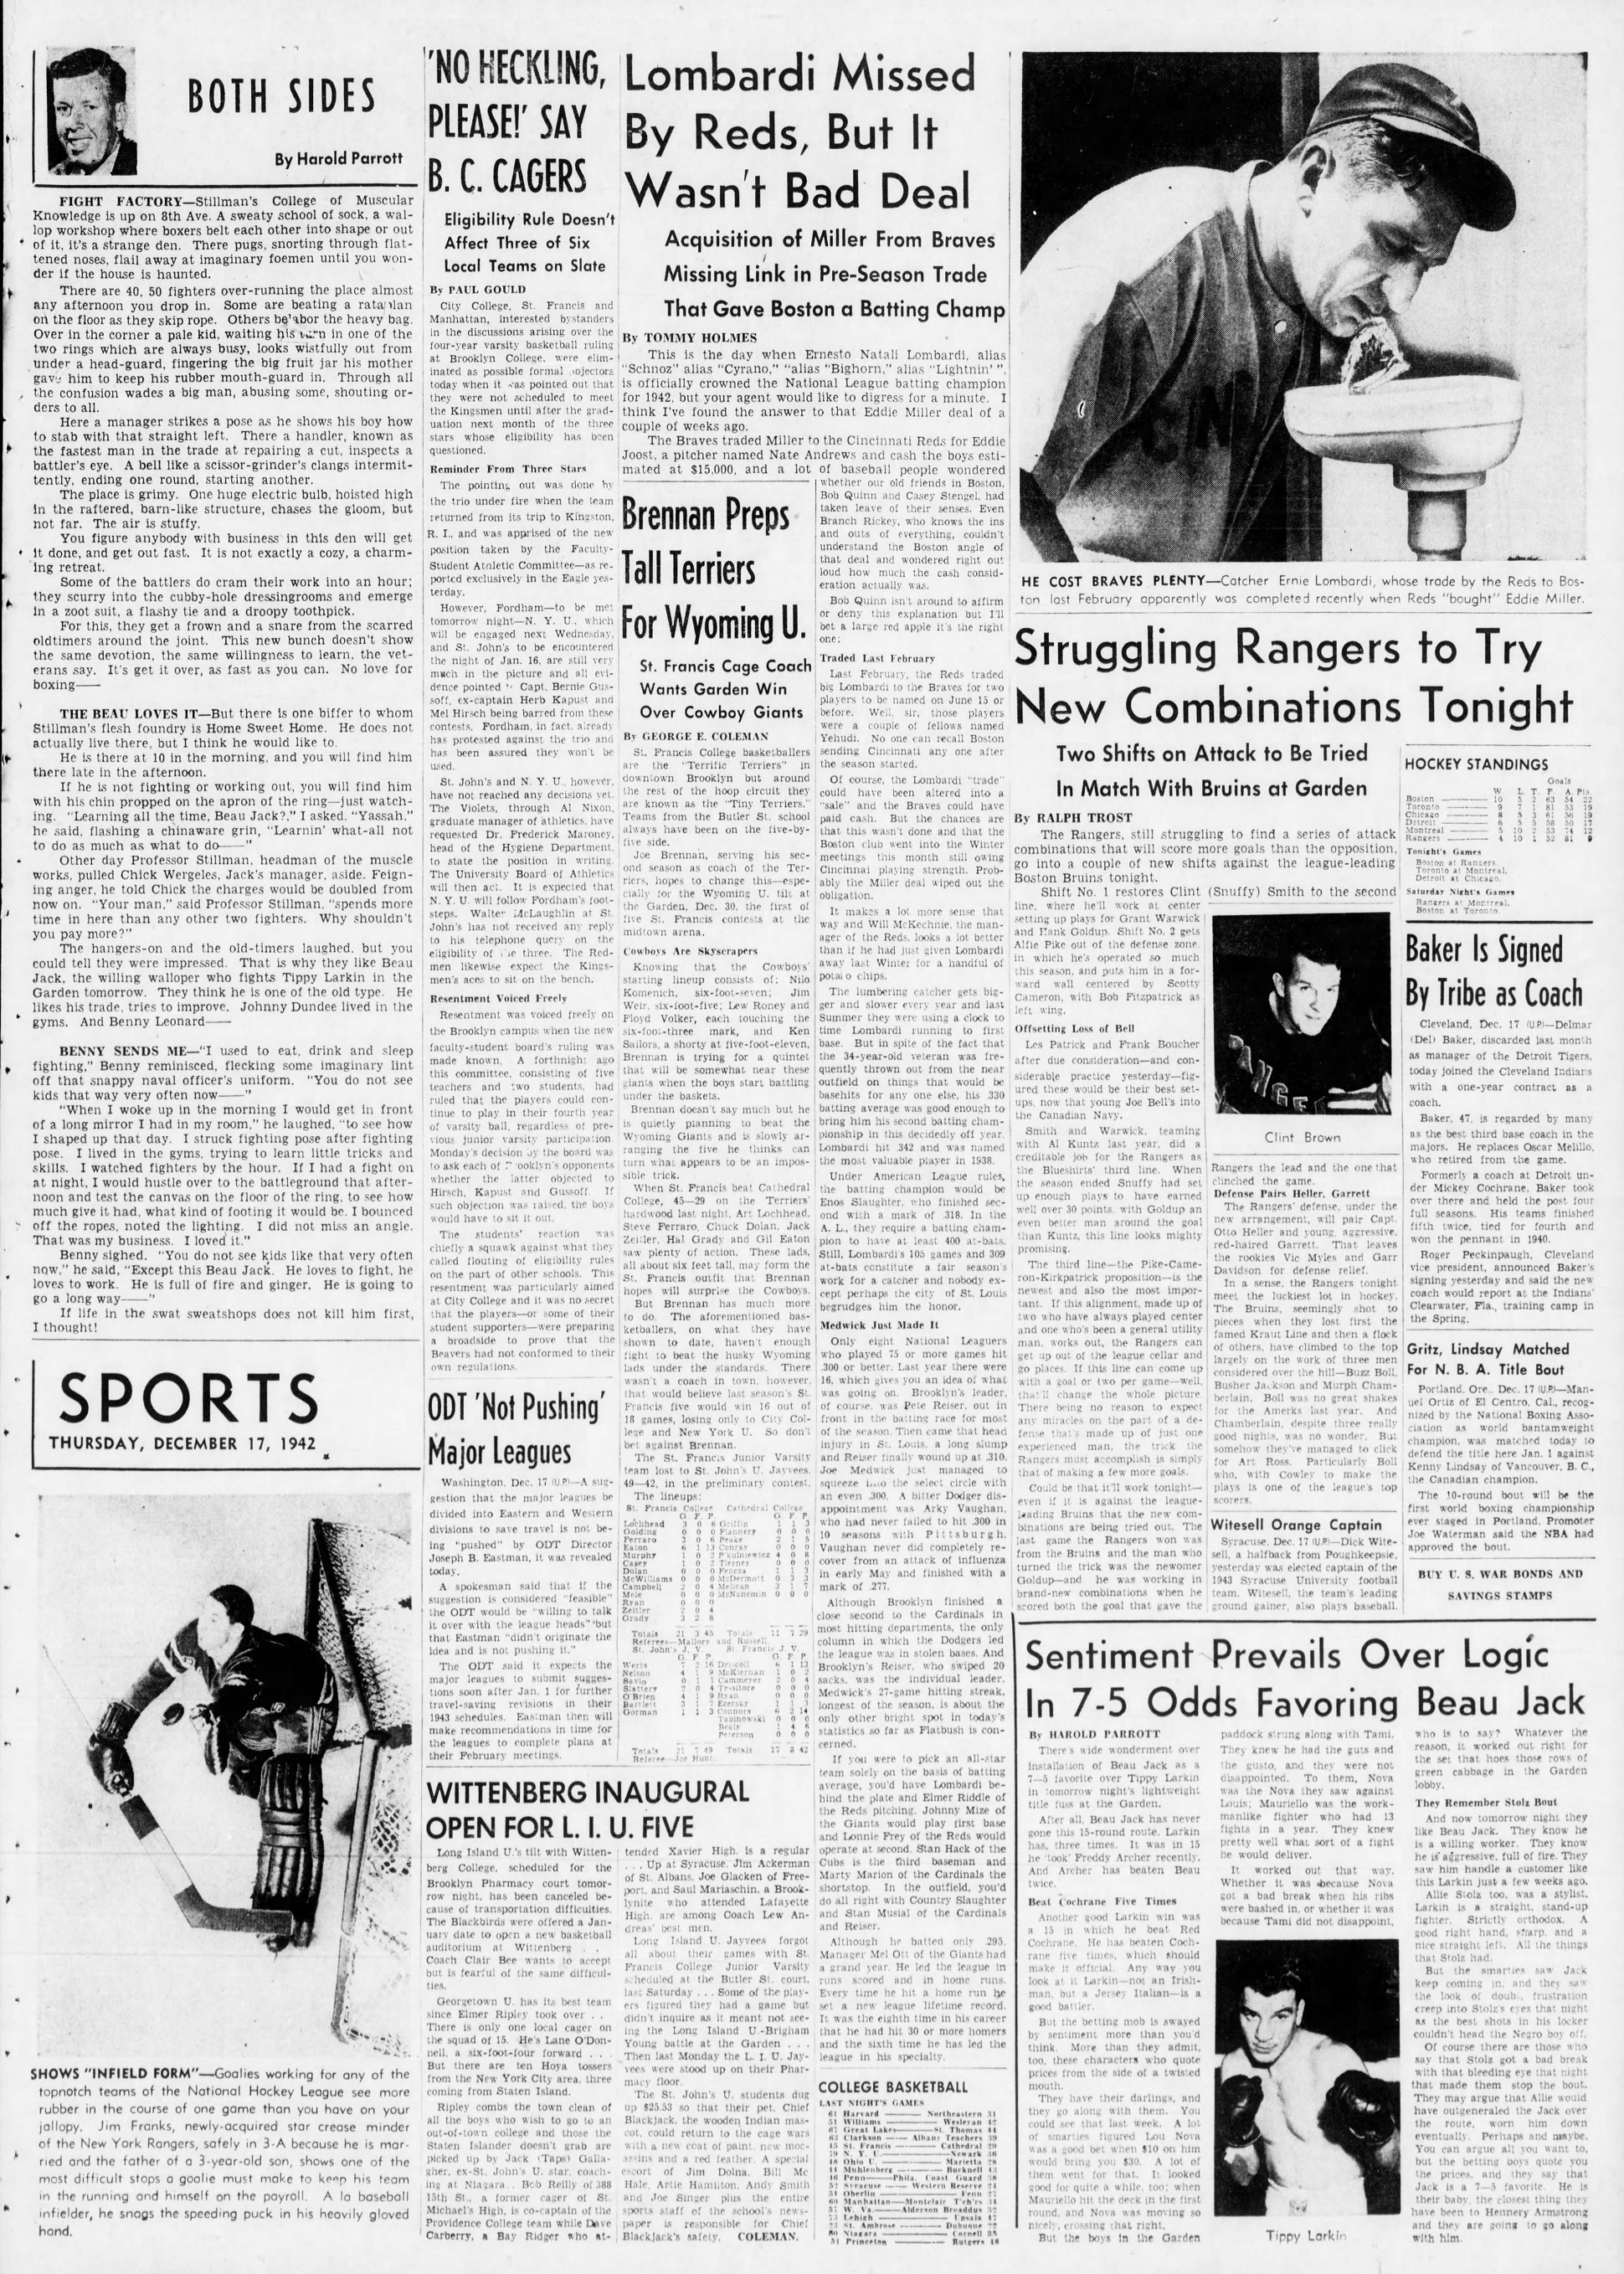 The_Brooklyn_Daily_Eagle_Thu__Dec_17__1942_(6).jpg